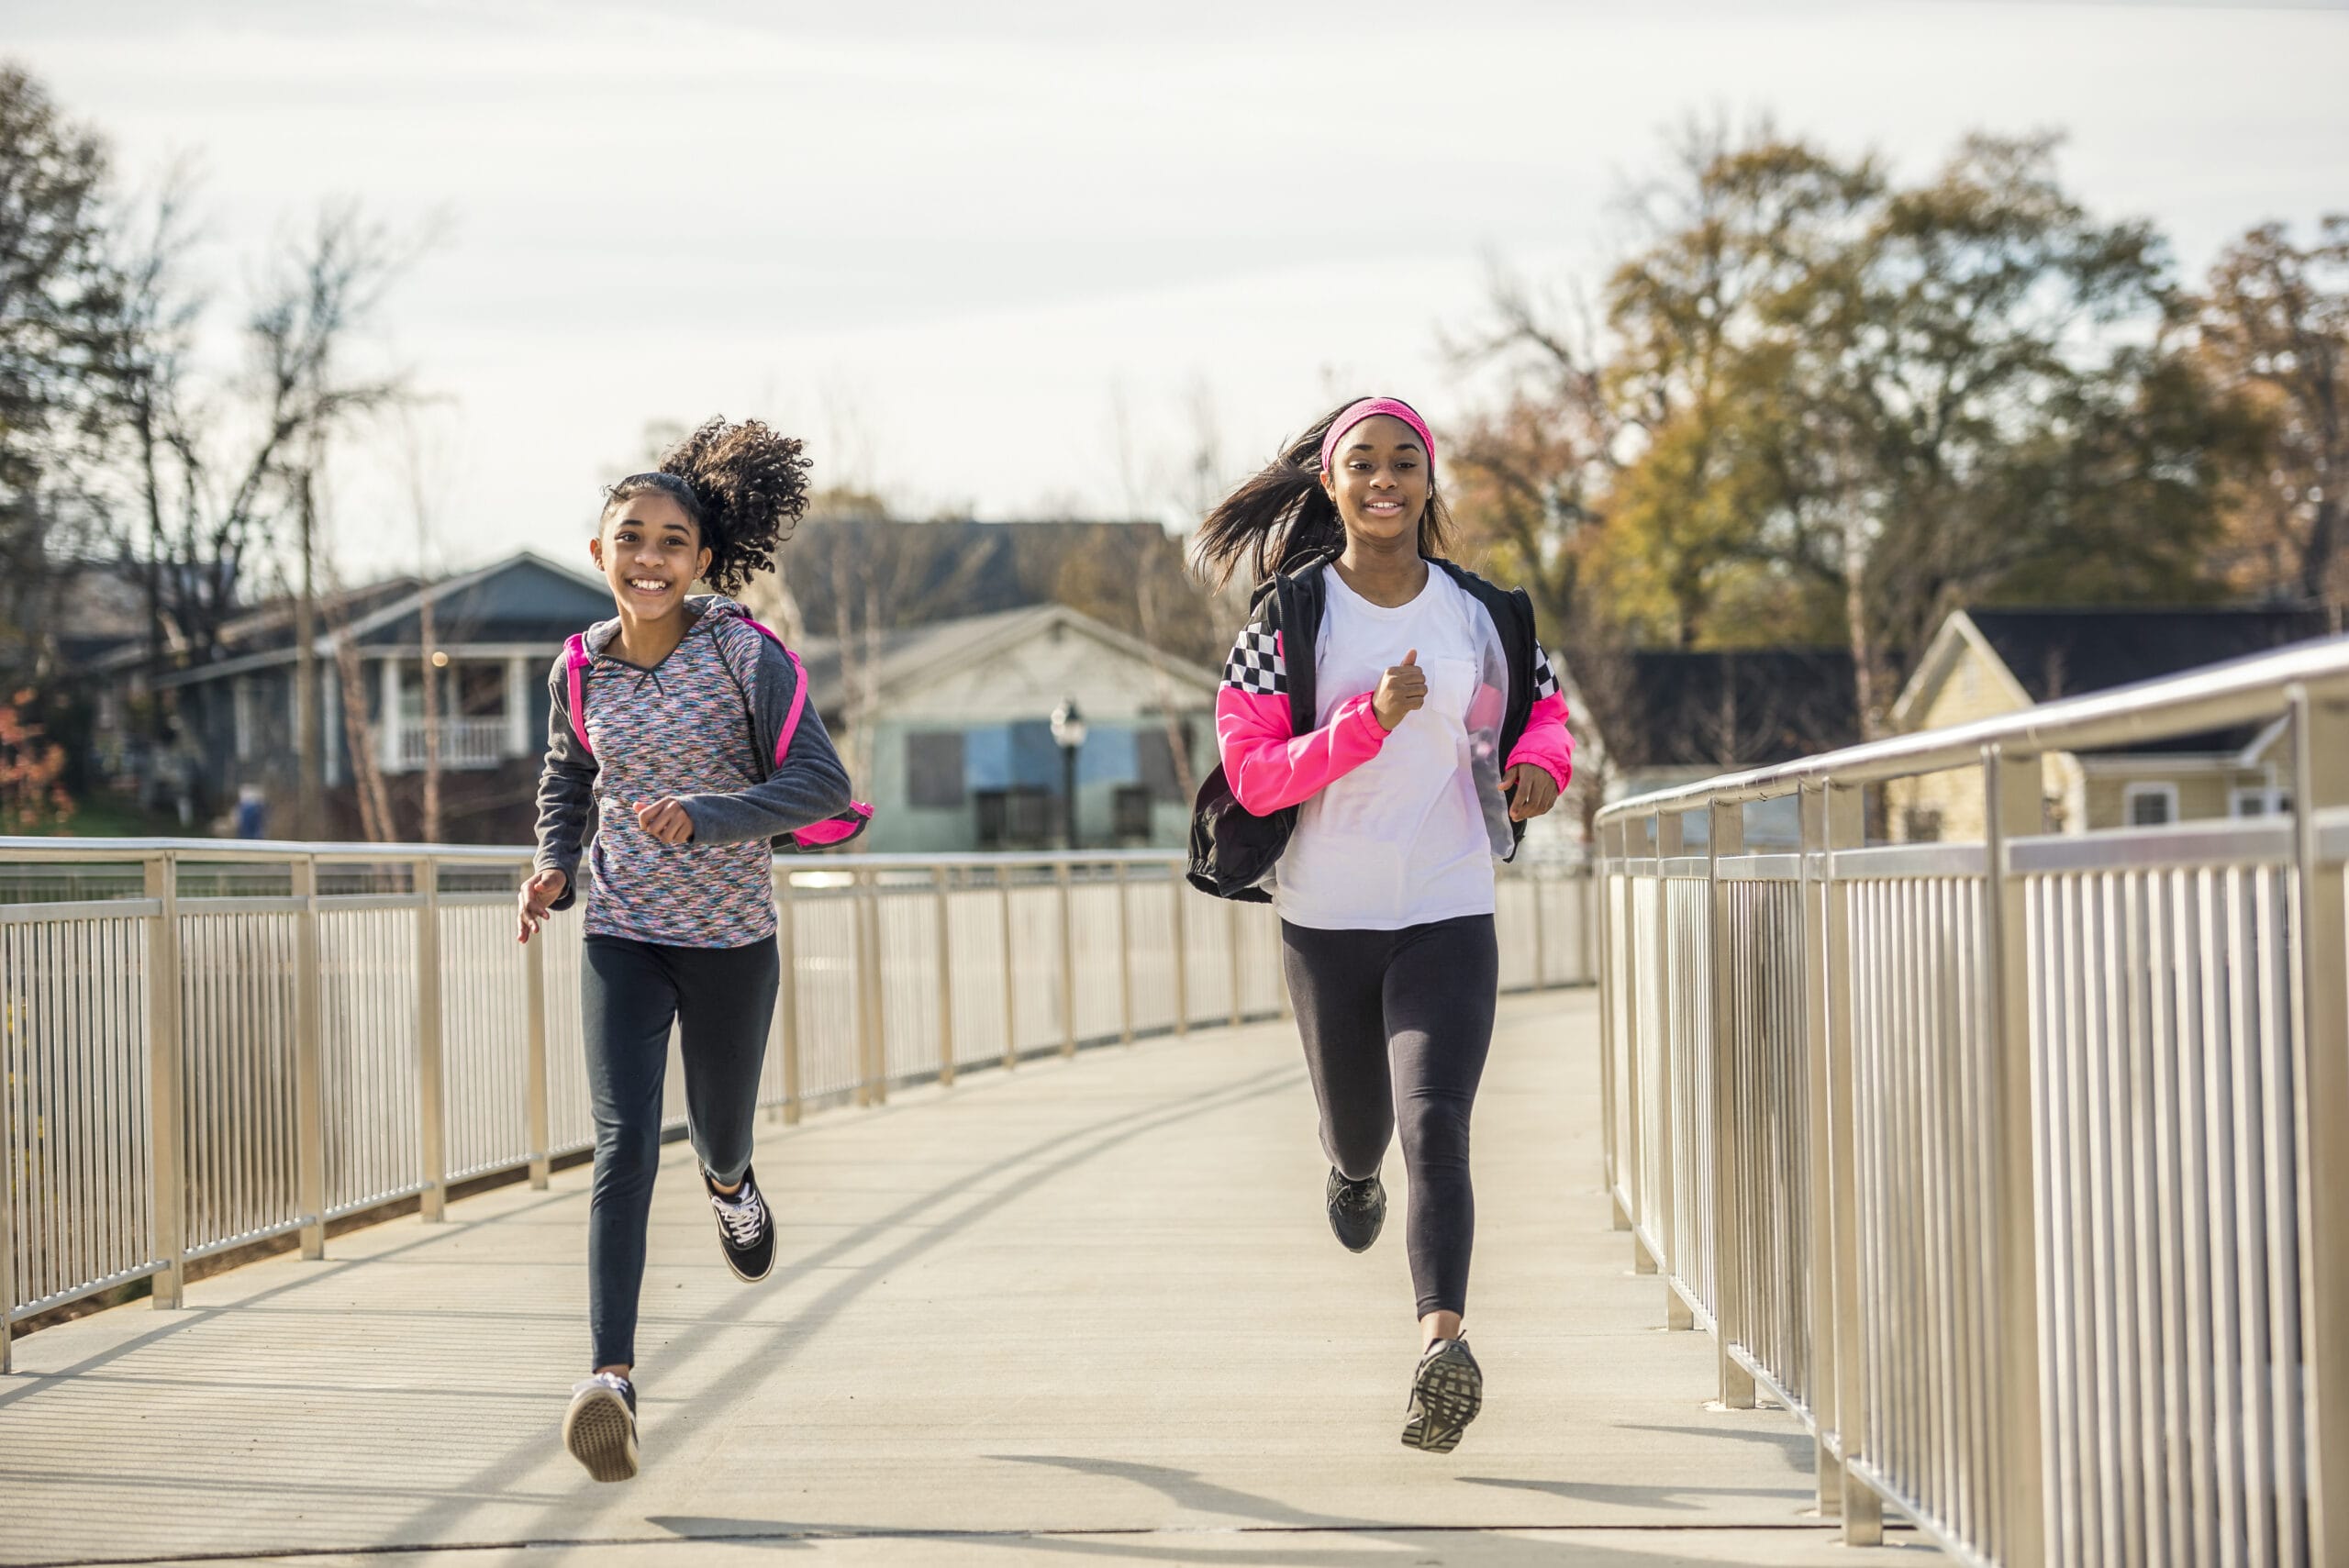 Two women jogging on a bridge.